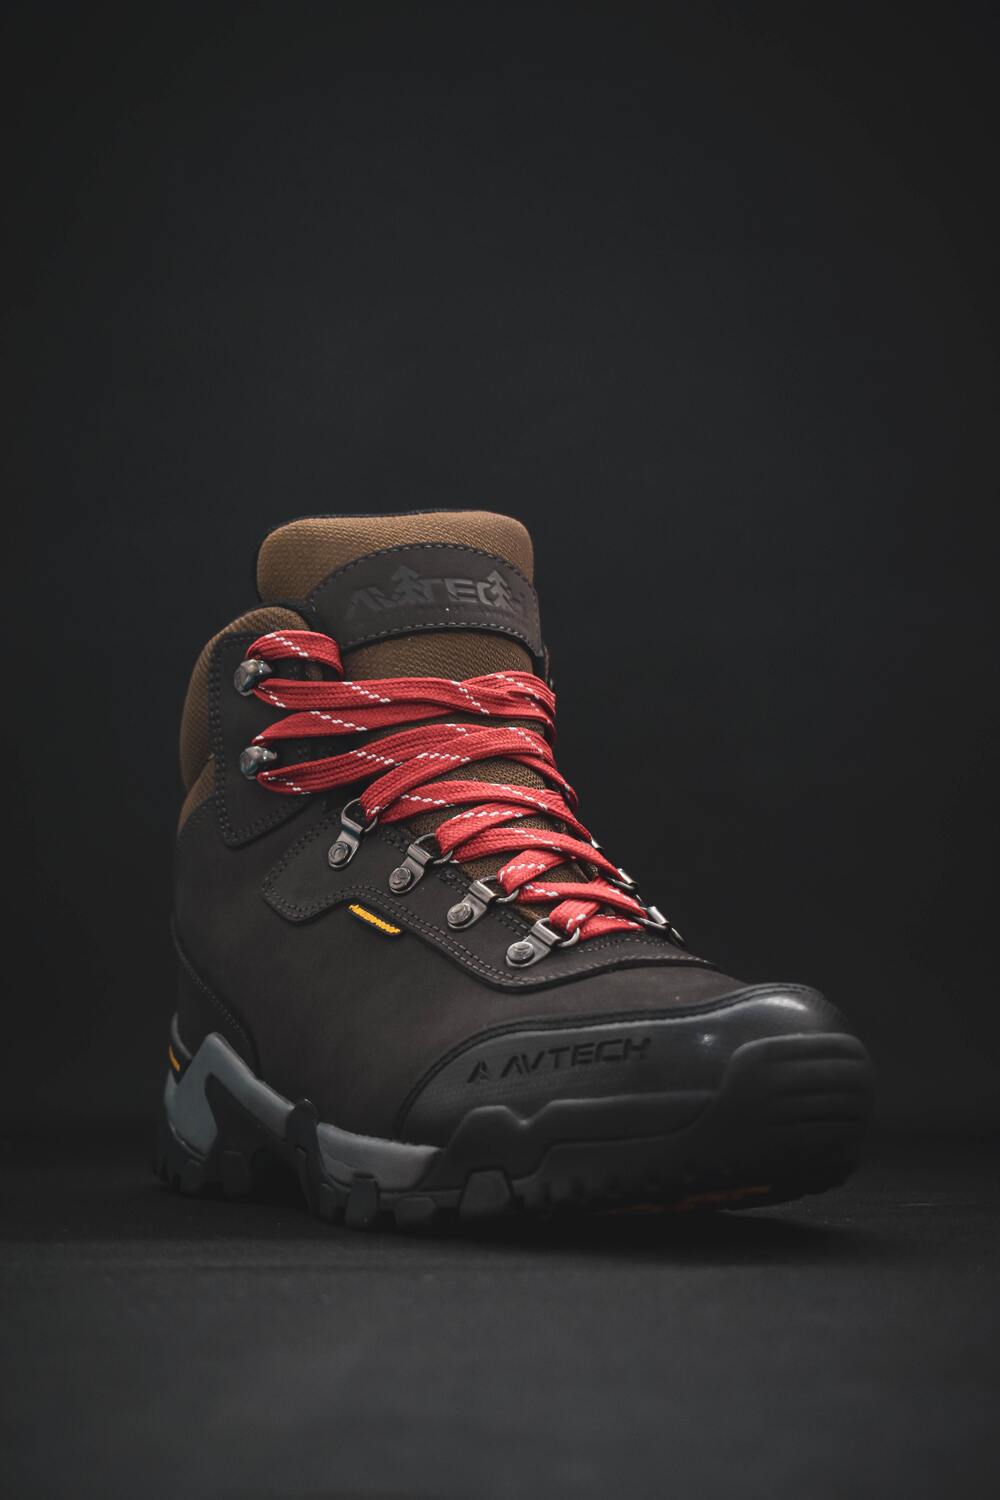 Waterproof hiking boots Norway wear